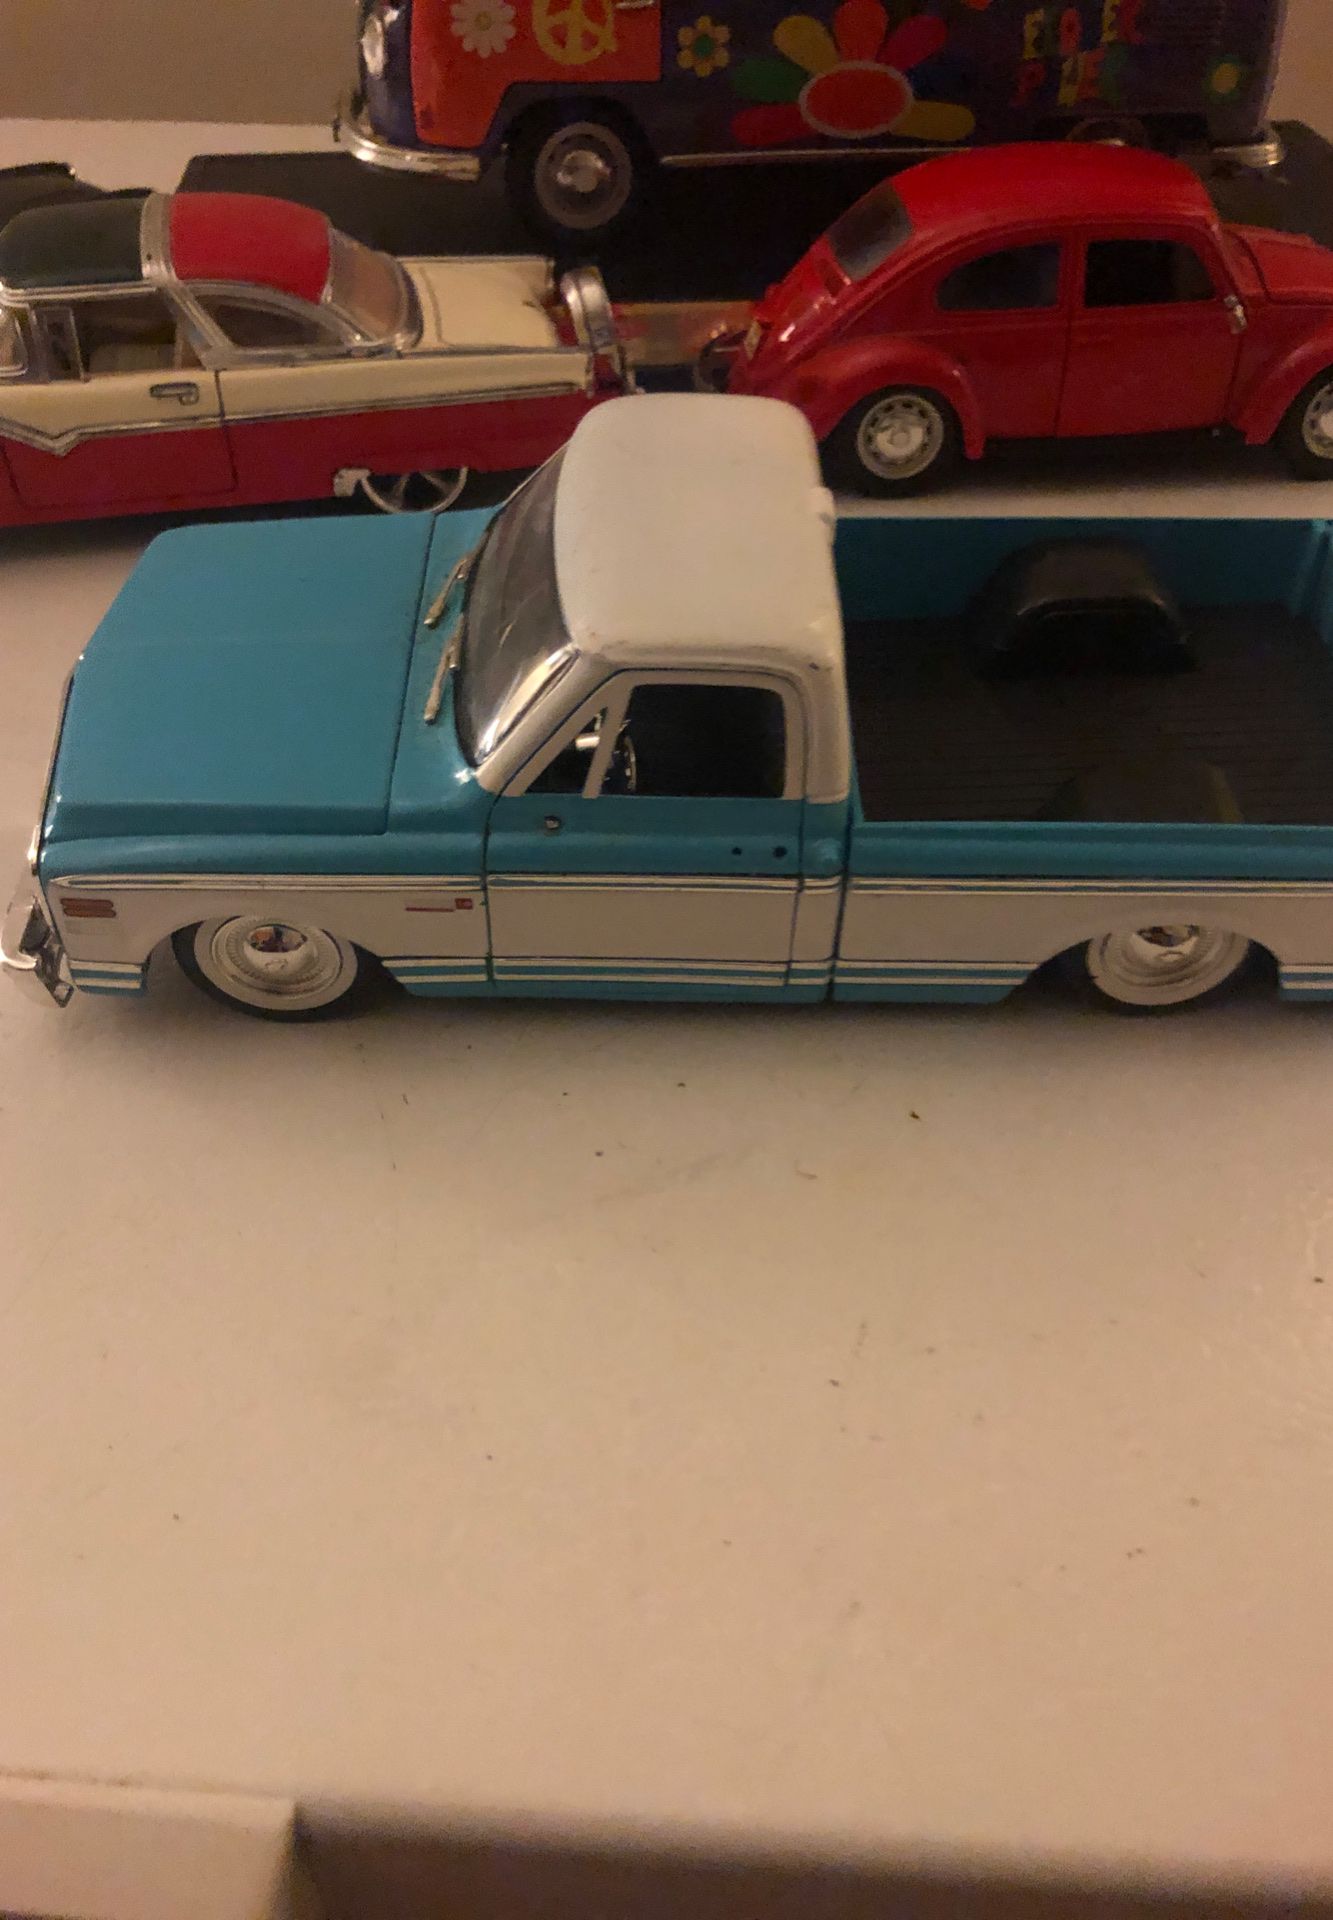 Chevy toy Cheyenne